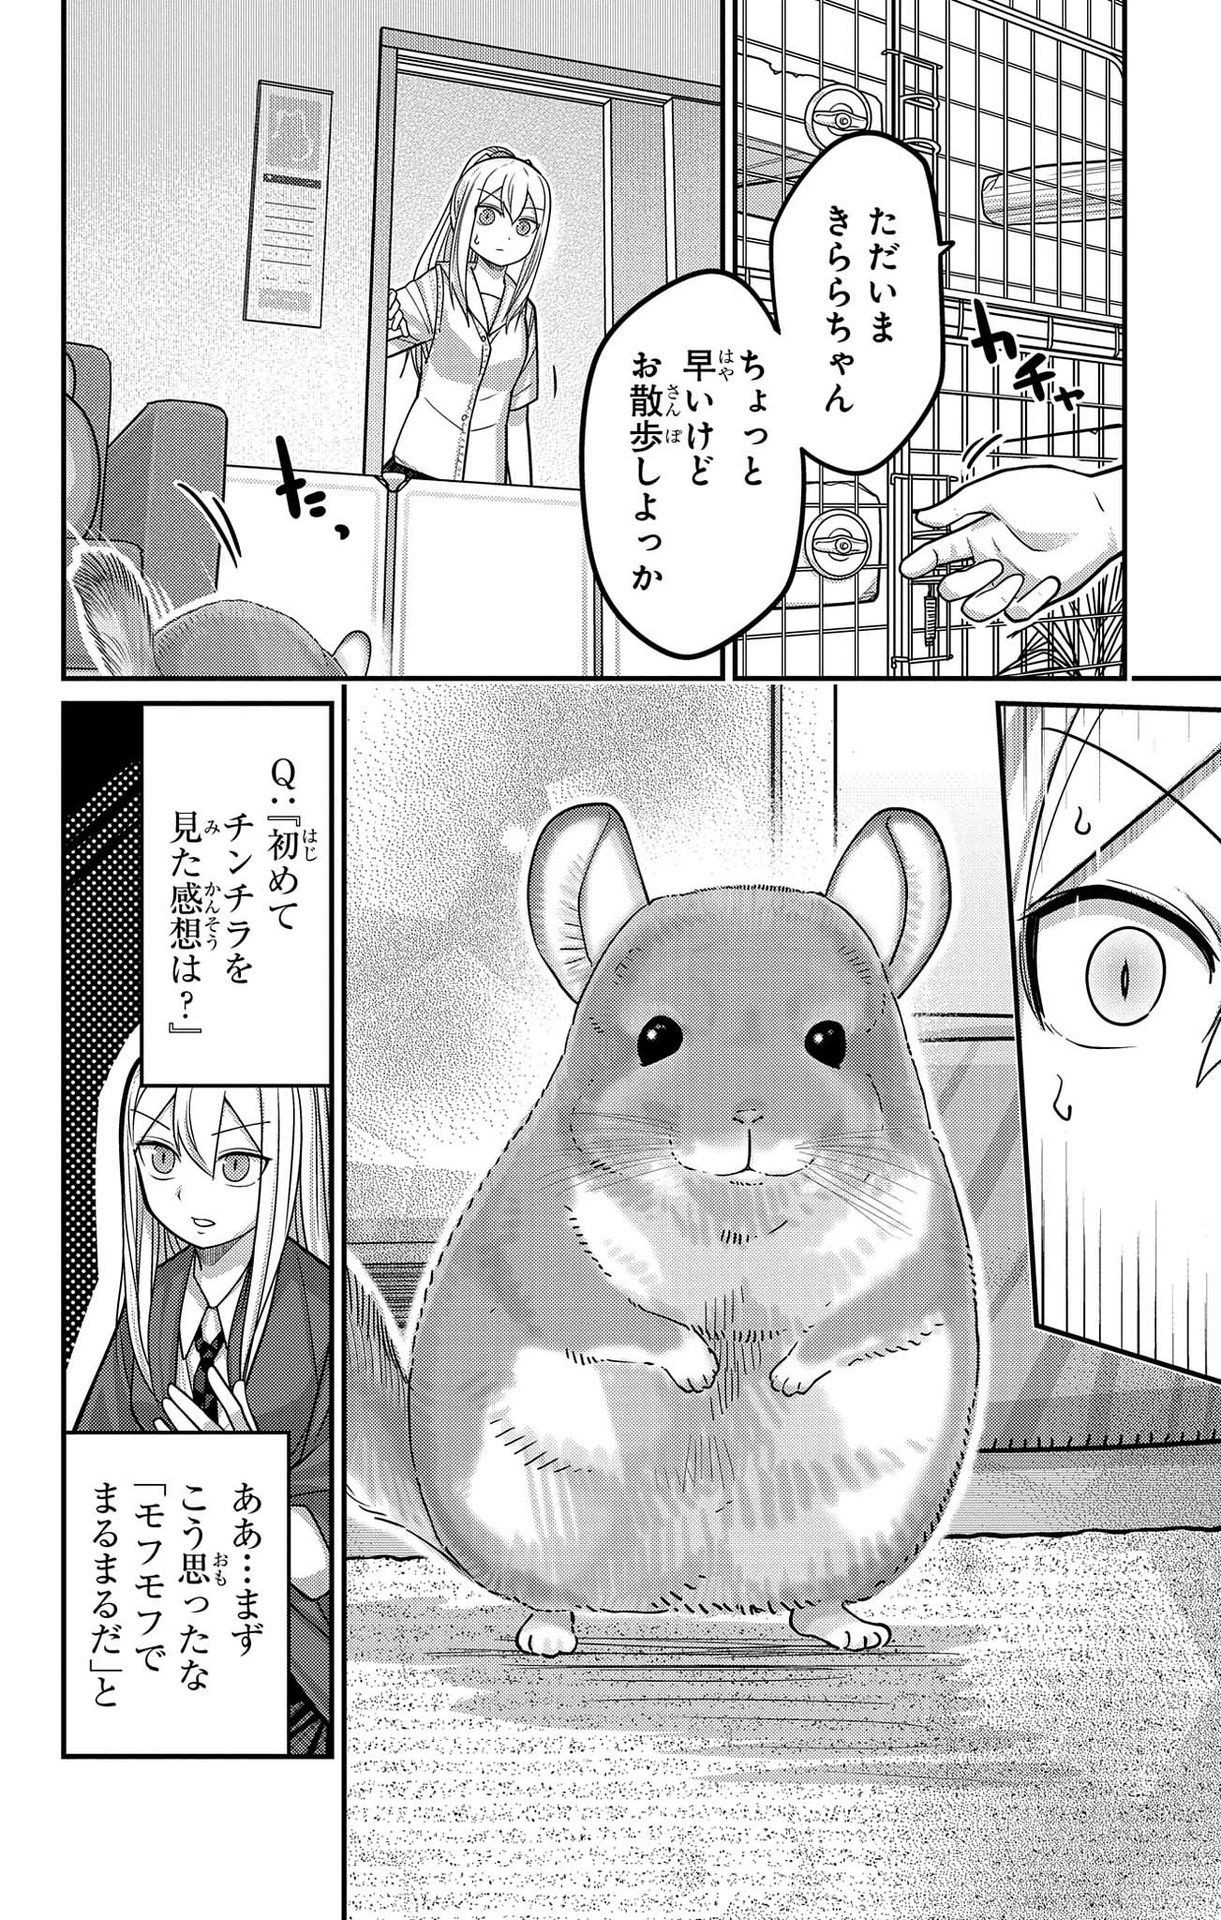 Kawaisugi Crisis - Chapter 93 - Page 12